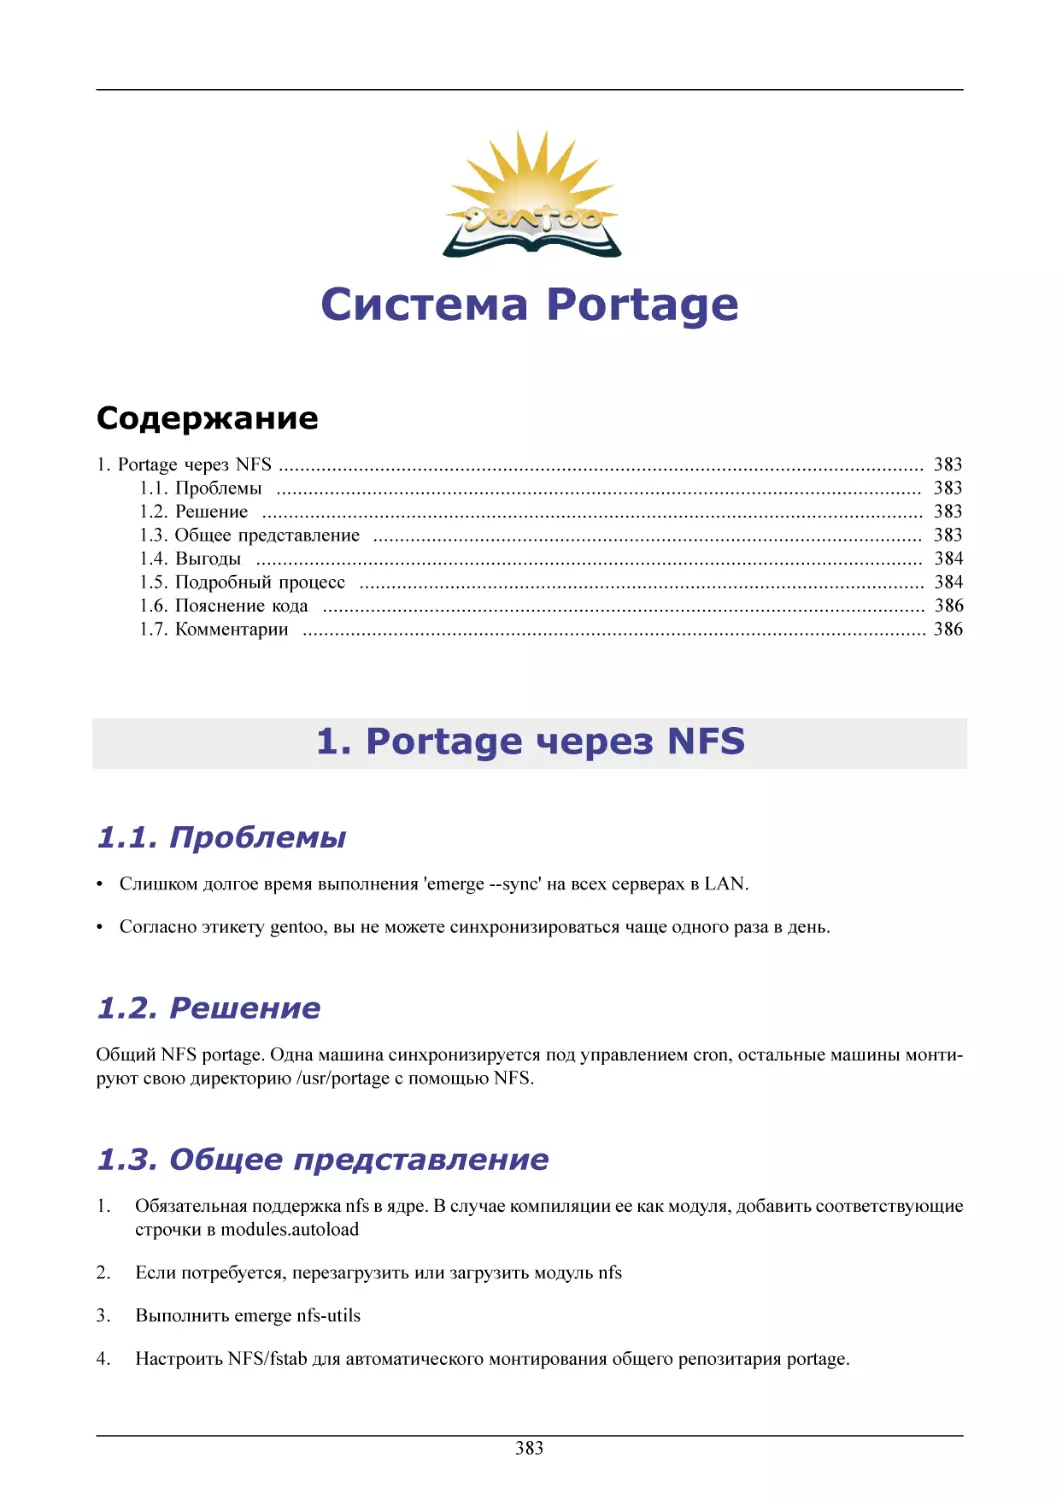 Система Portage
Portage через NFS
Проблемы
Решение
Общее представление